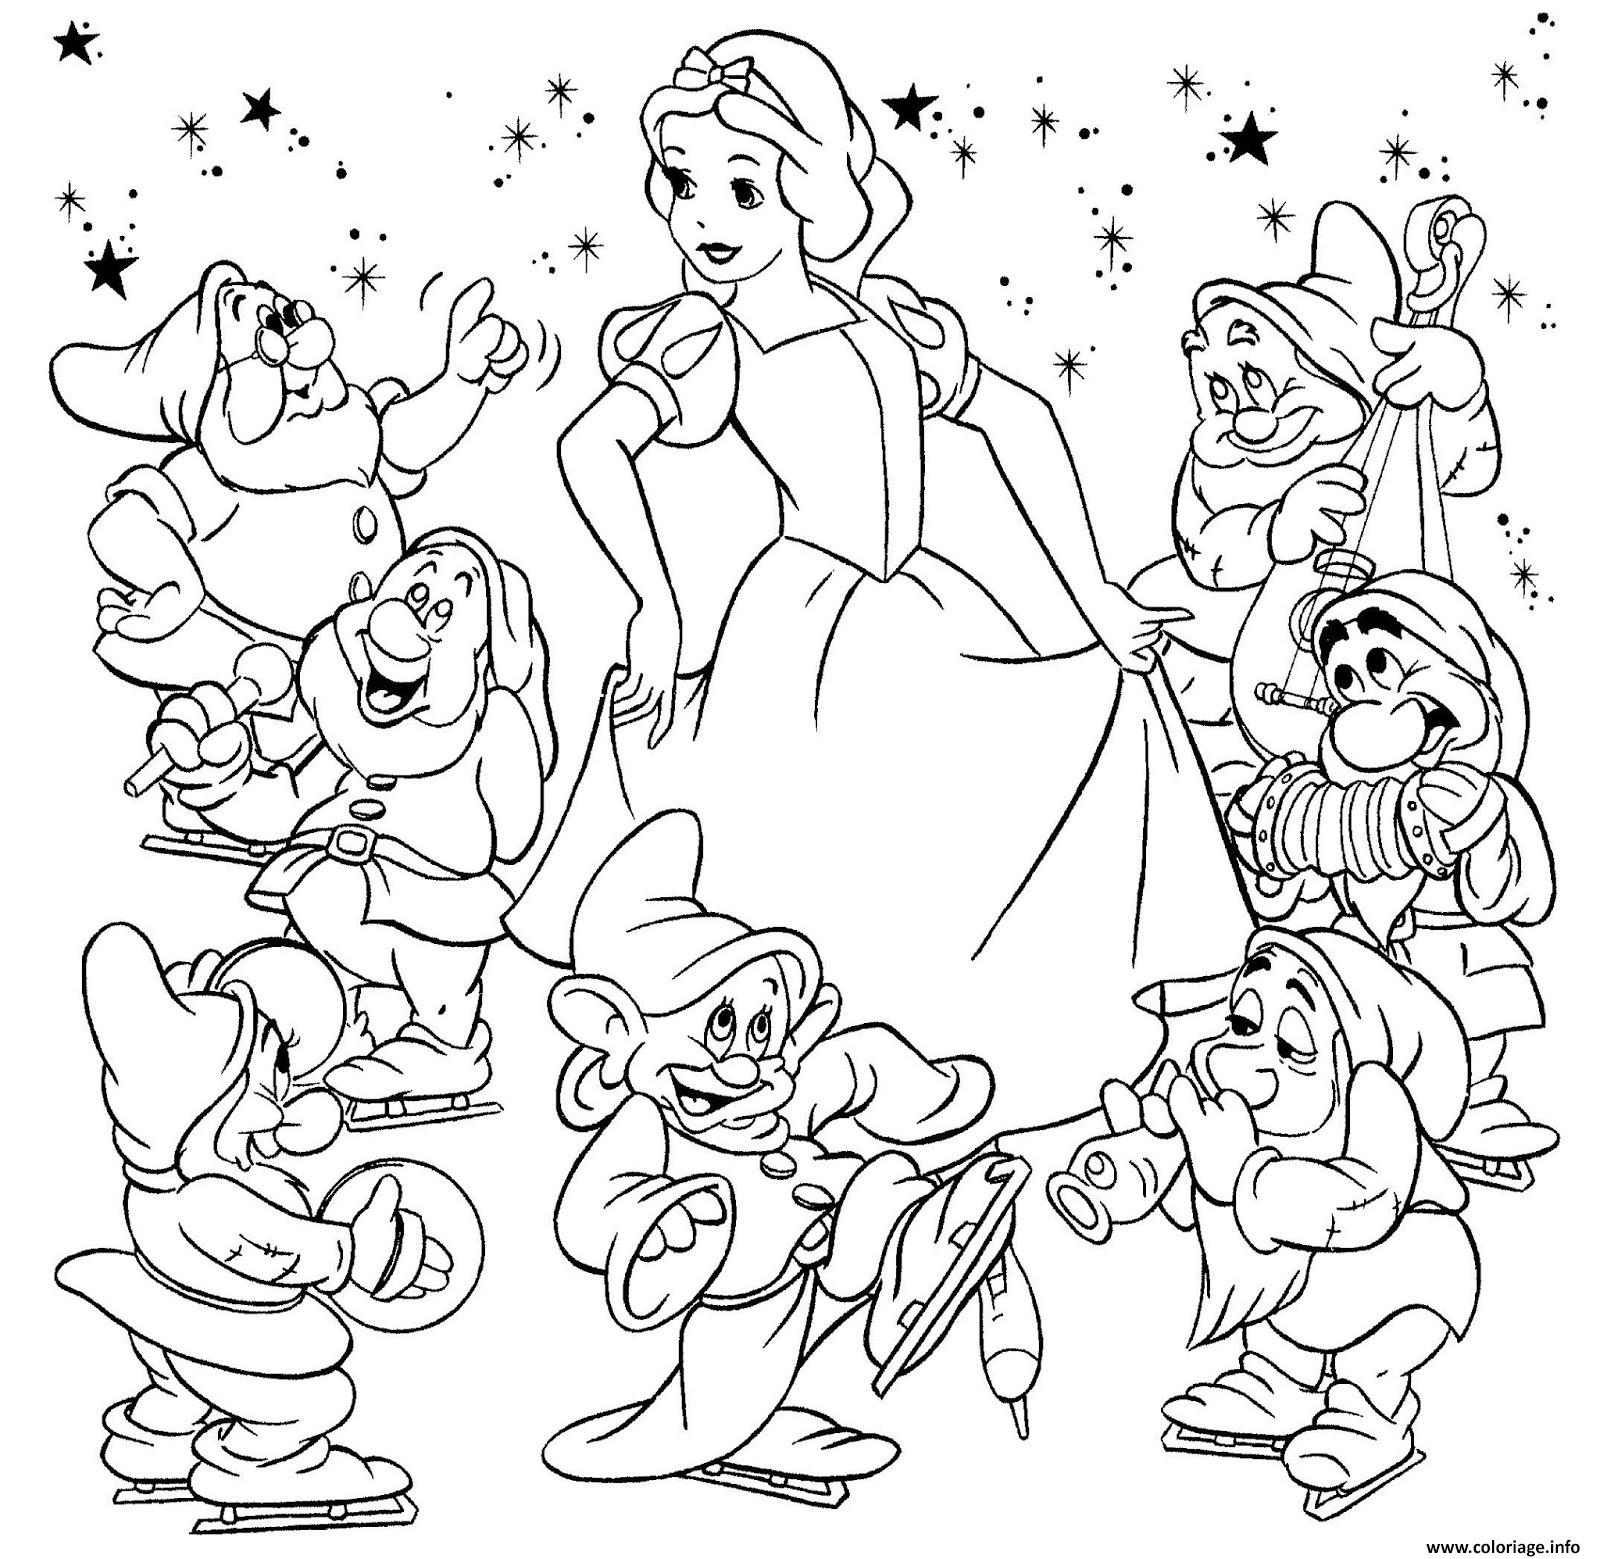 Coloriage Blanche Neige Et Les 7 Nains Film Disney Dessin pour Coloriage De Blanche Neige À Imprimer